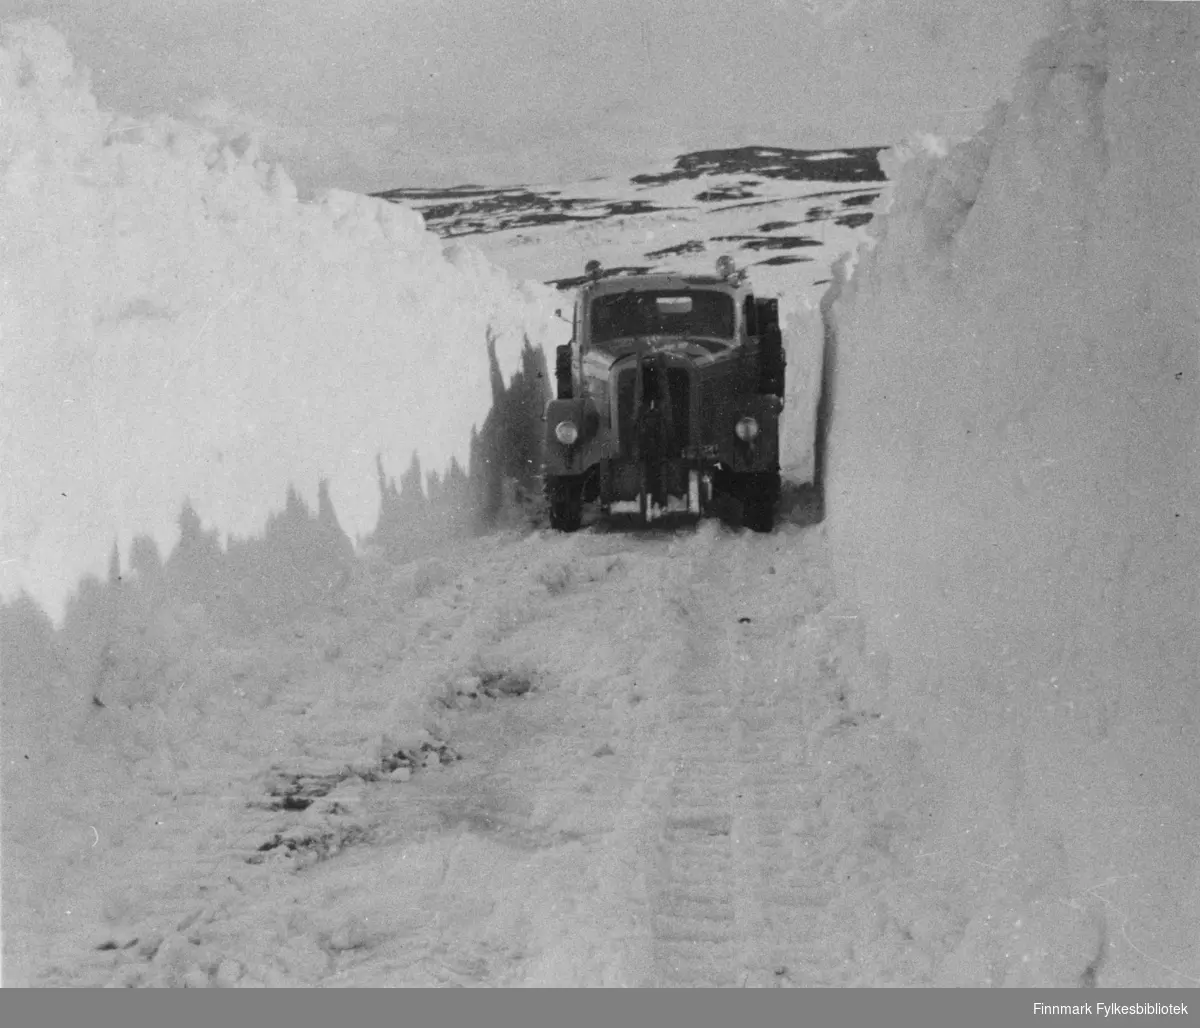 R.v.6 Ifjordfjellet. Veien ble åpnet med D-6 bulldozer, men ble ryddet med D-7 bulldozer m/snøplog. Bildet er av en Mersedes brøytebil.